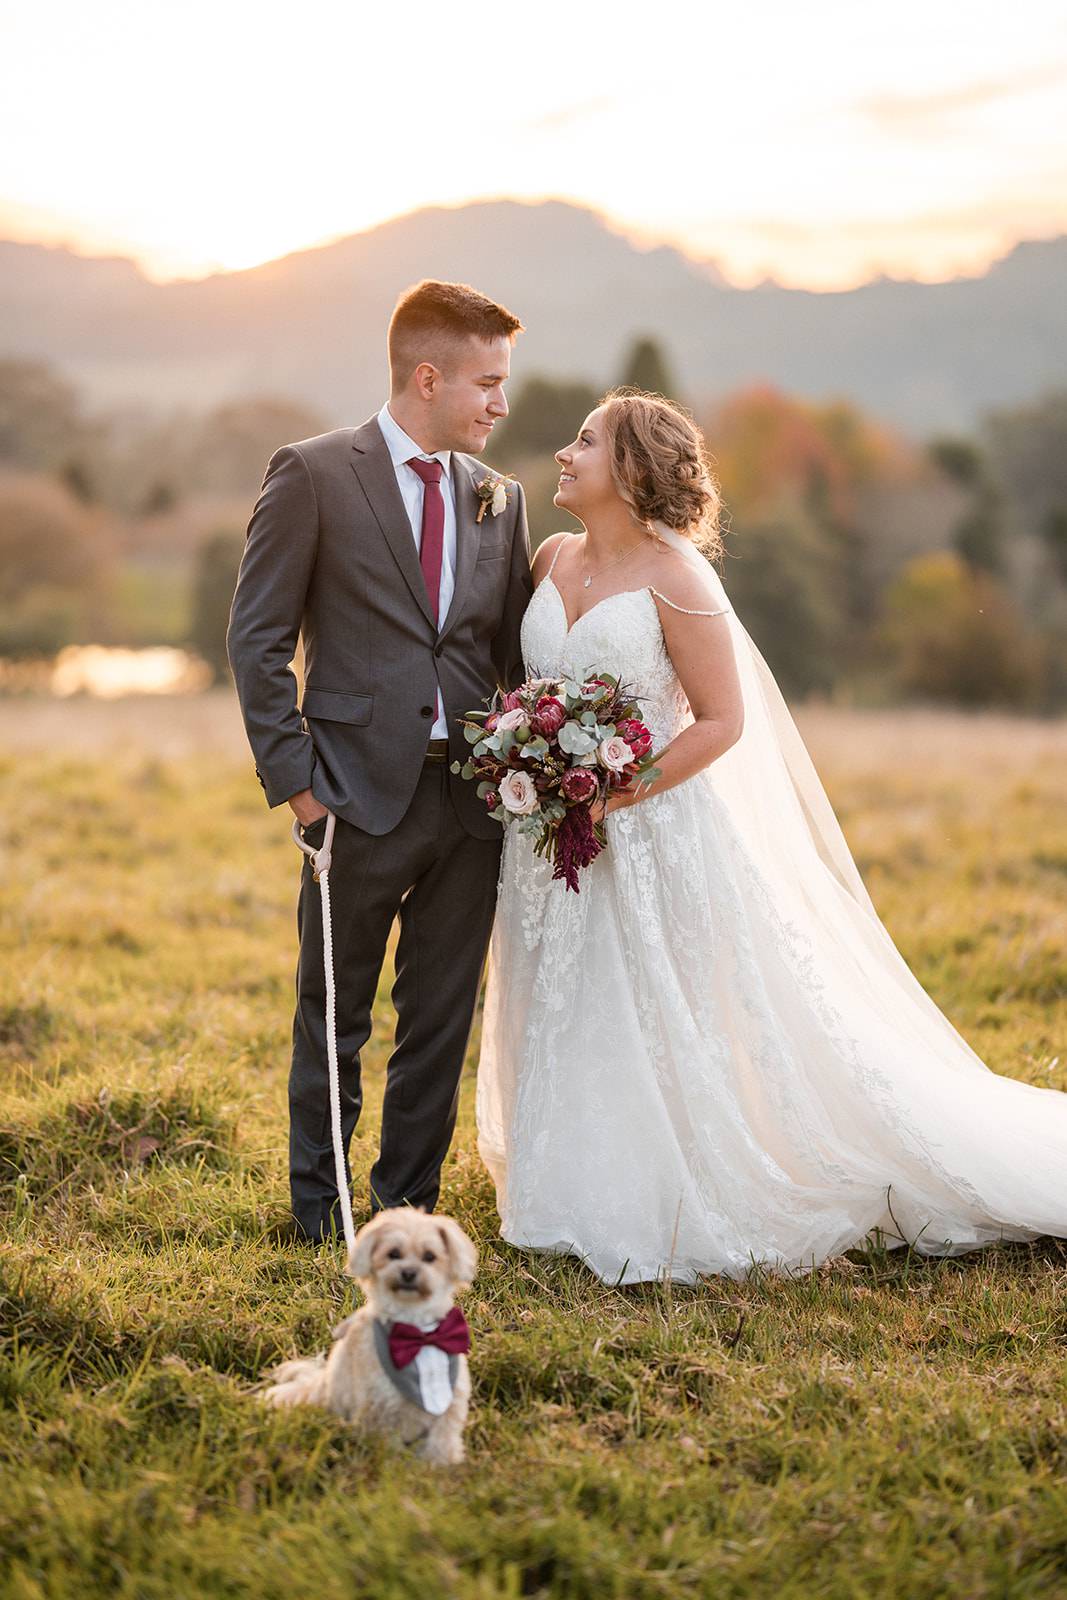 Ashley + Joel // Mali Brae Farm // Wedding Photographer Southern Highlands